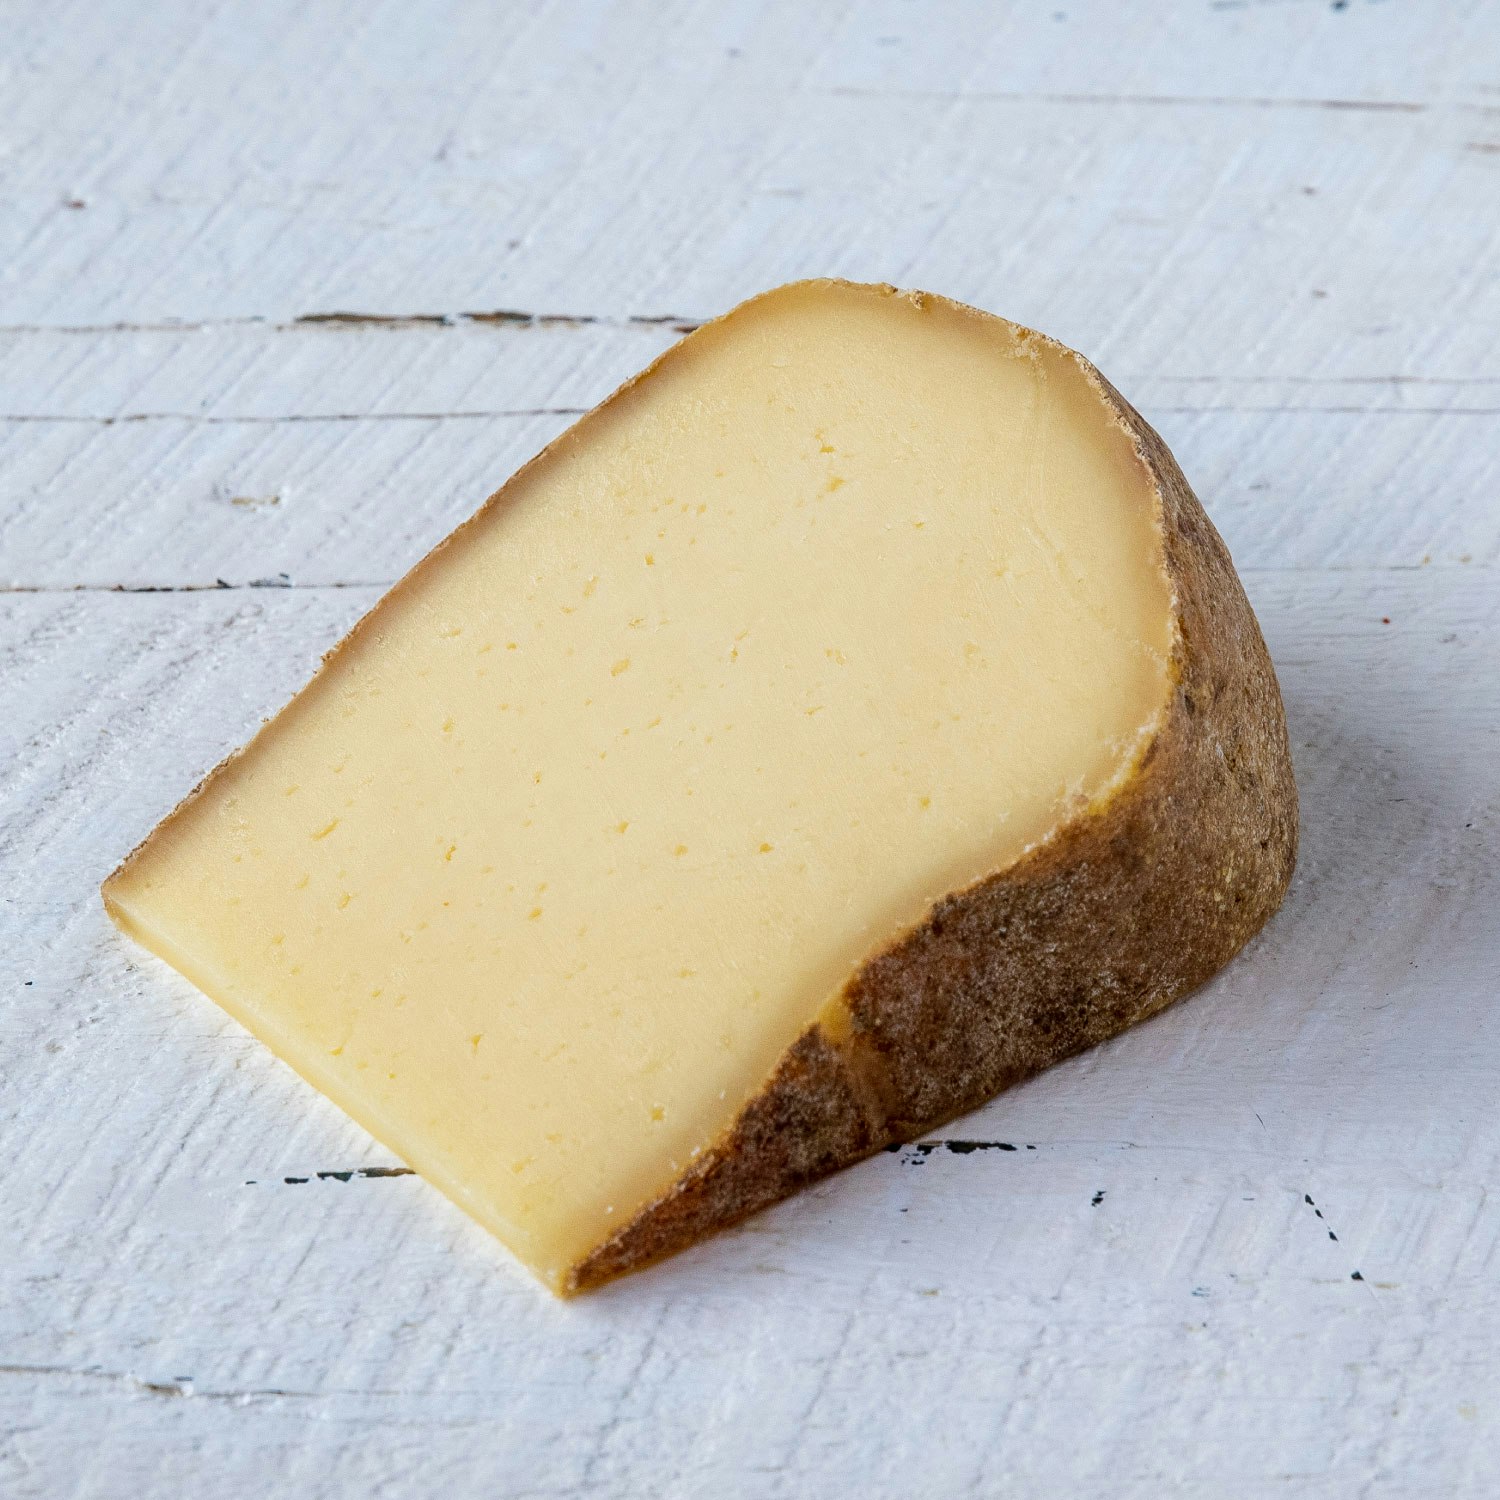 vermont shepherd verano cheese